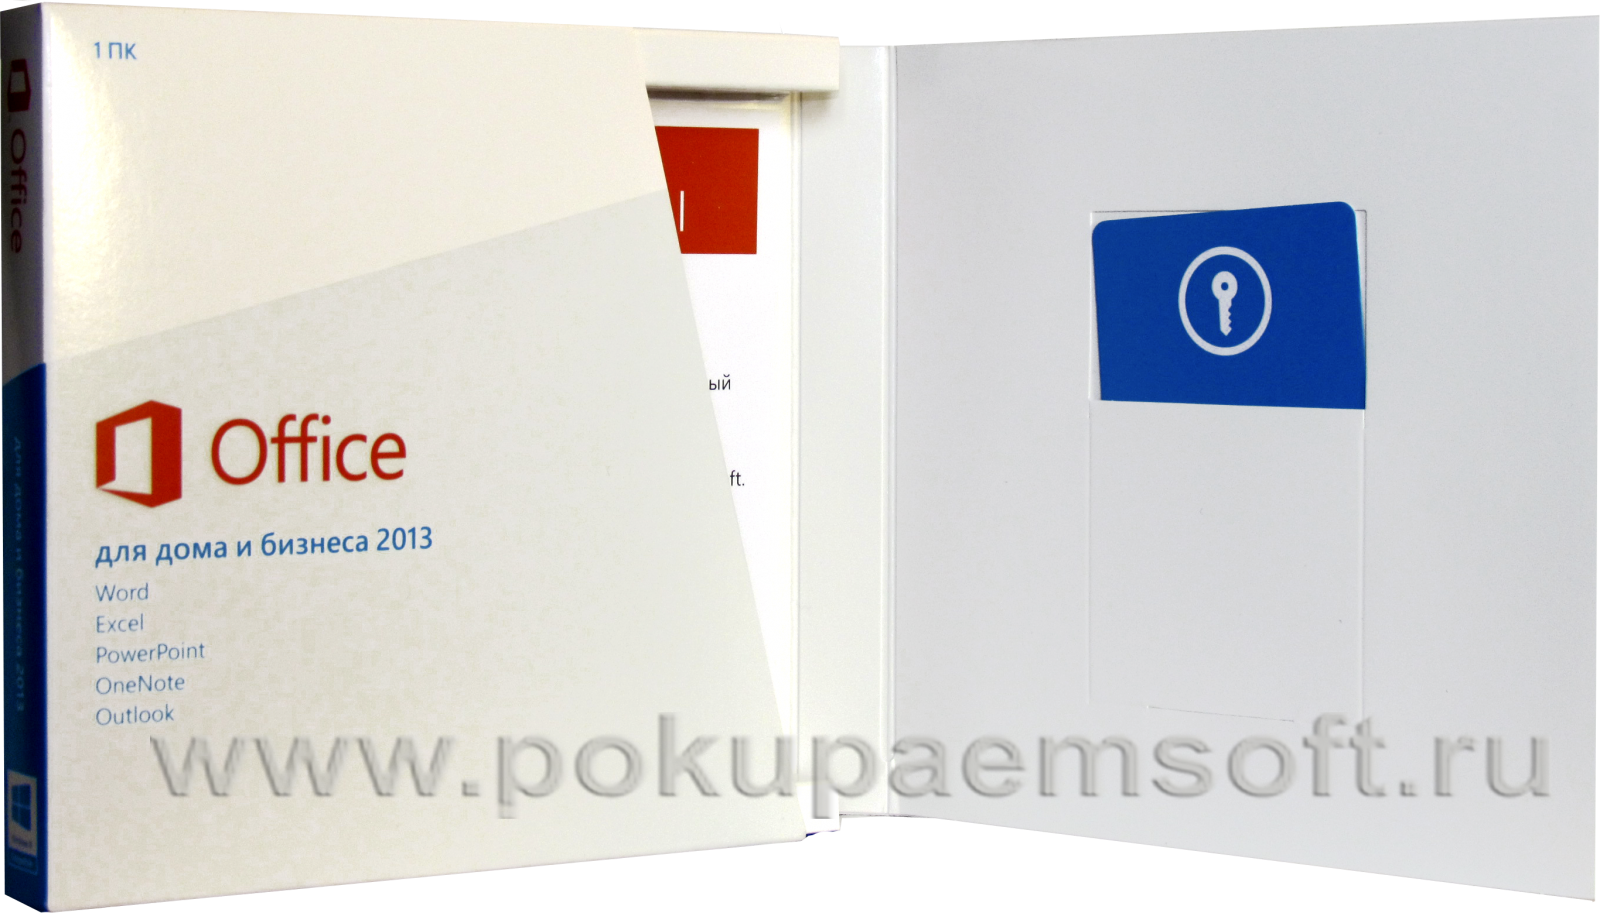 Pokupaemsoft.ru покупаем Office 2013 бокс вскрытый